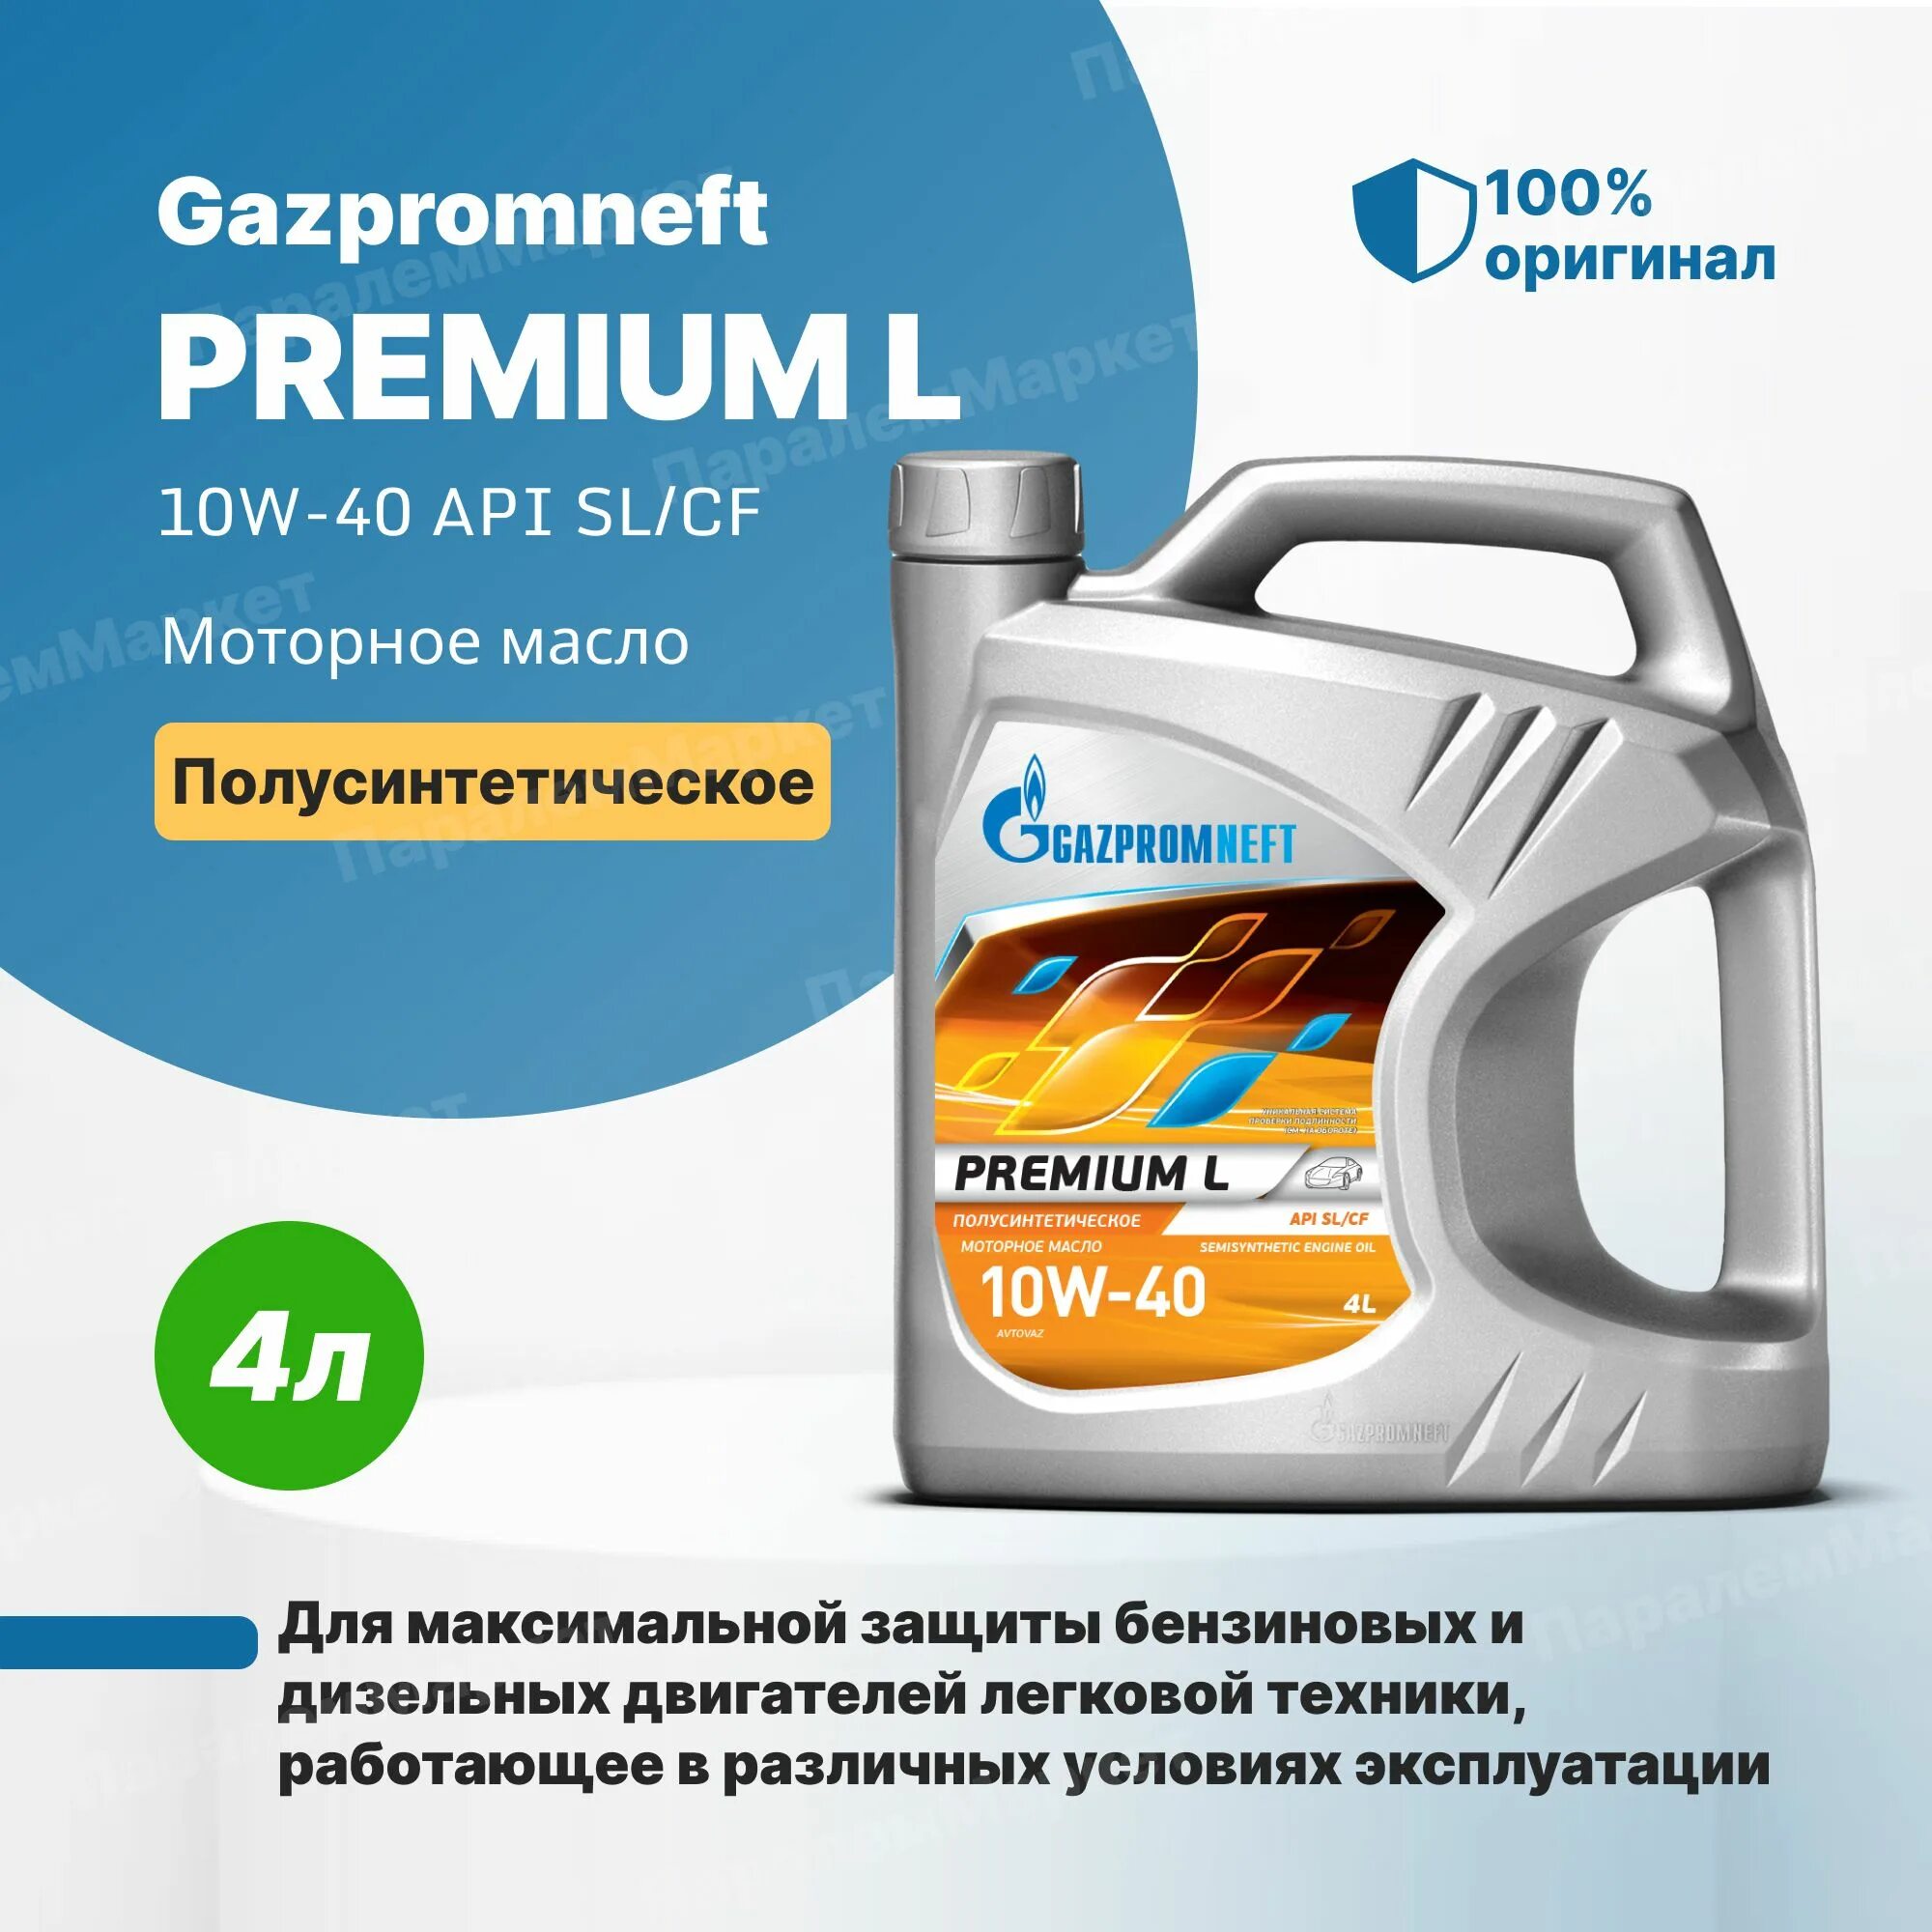 Масло газпромнефть отзывы владельцев. Gazpromneft масло моторное Premium l 10w-40 полусинтетическое 4 л. Газпромнефть премиум л 10w-40. Масло Газпромнефть 10w 40 премиум л.